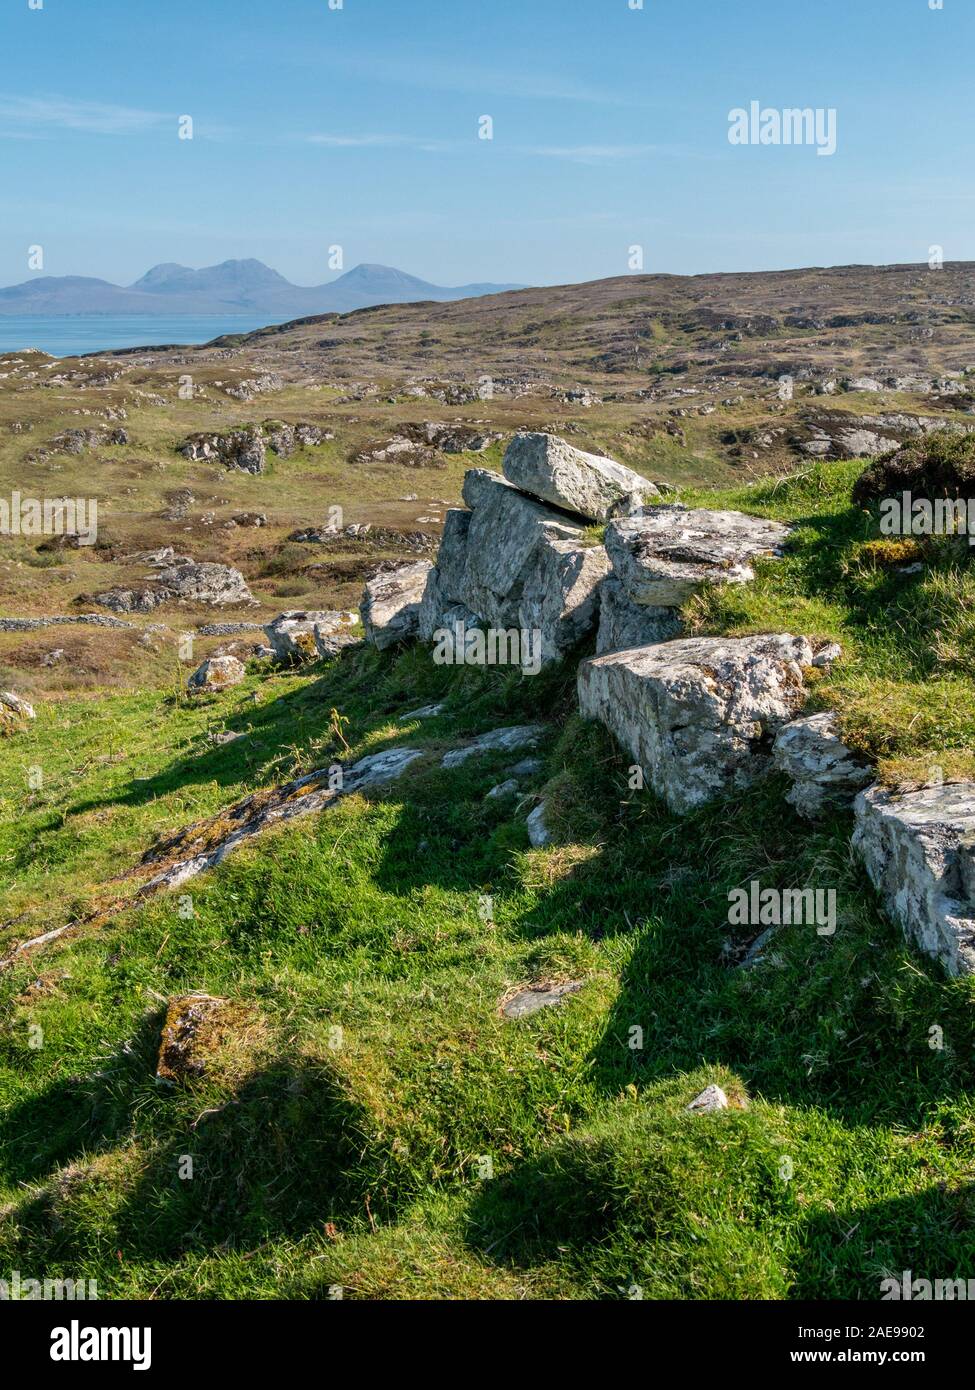 Ruines de vieux mur de pierre, fort de colline Cholla Dun sur l'île de Colonsay avec les Paps of Jura dans la distance, Ecosse, Royaume-Uni. Banque D'Images